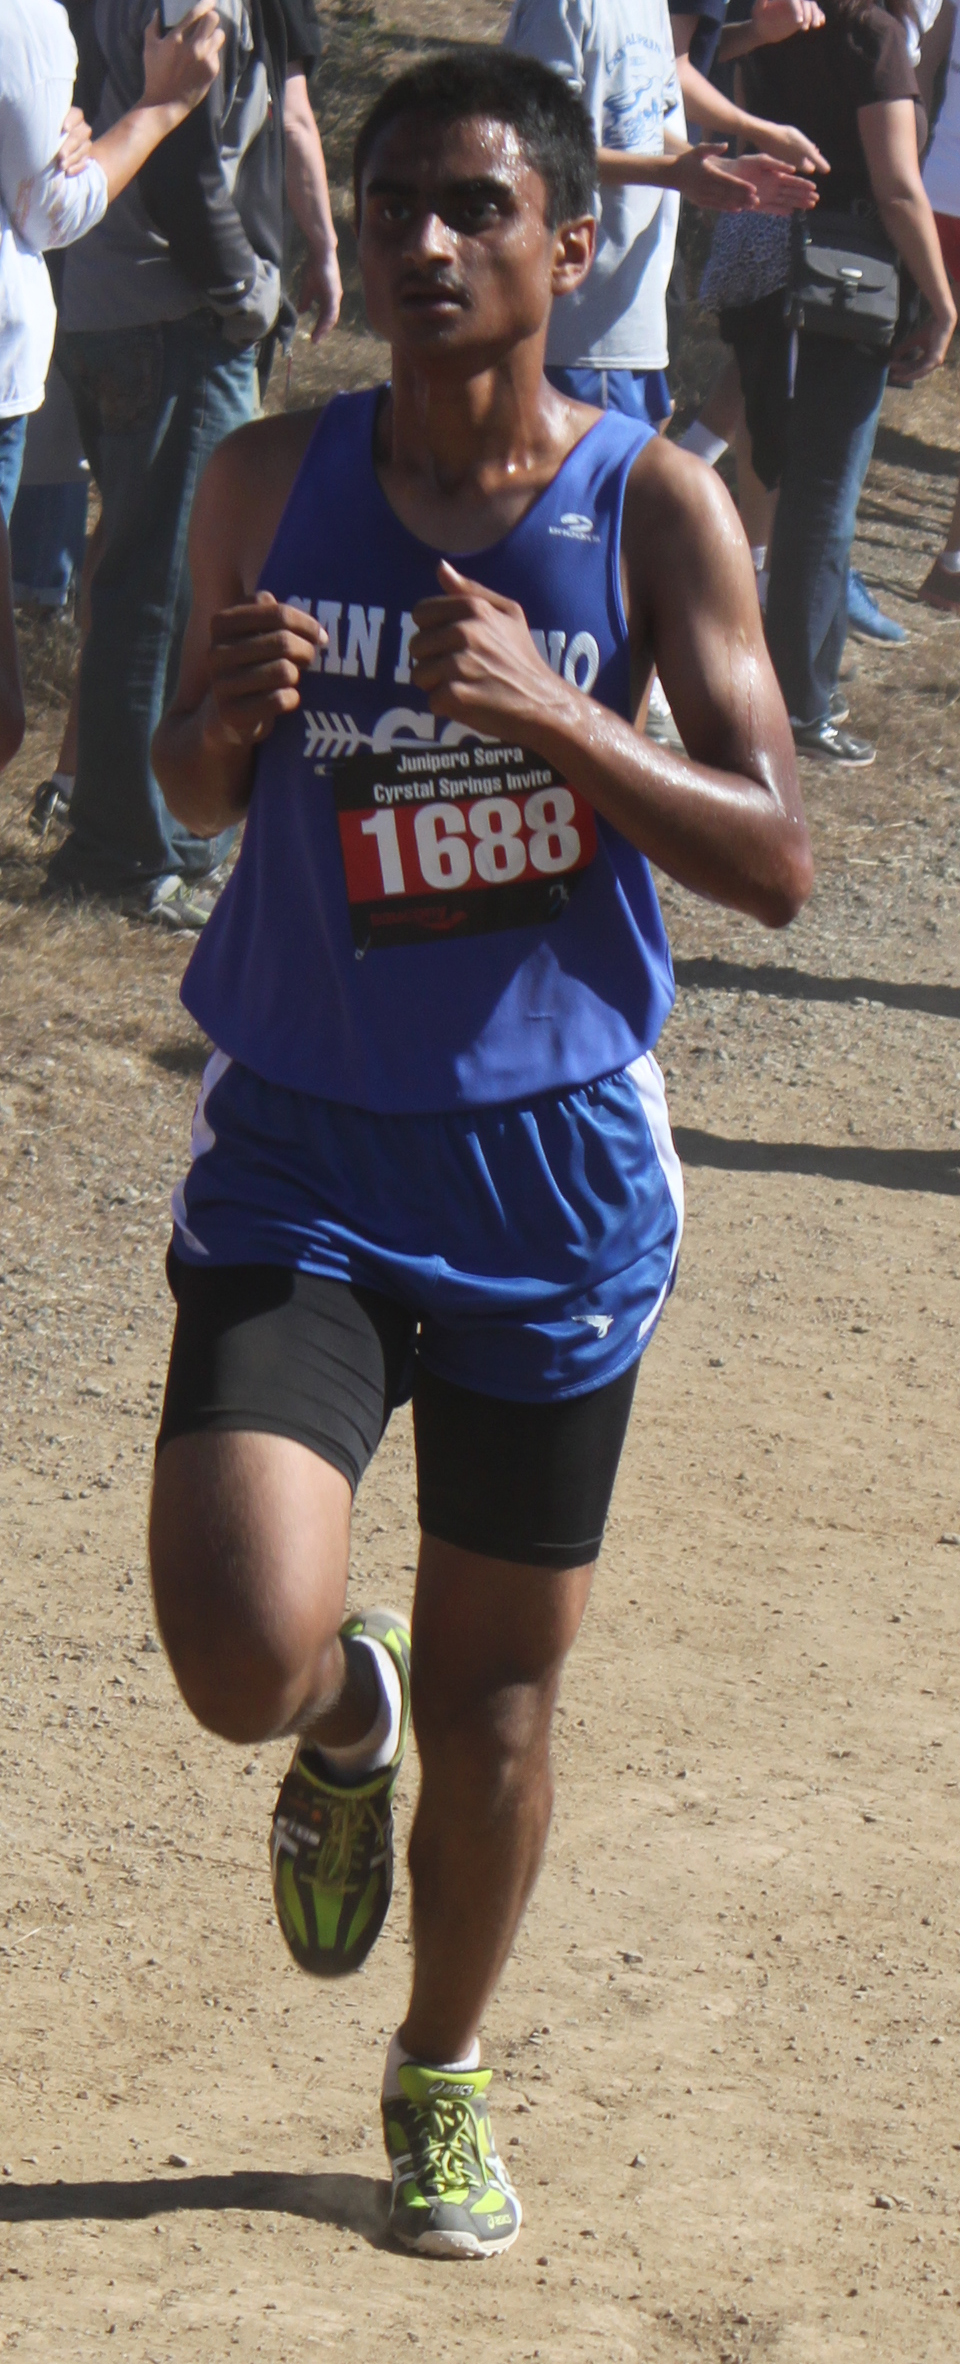 2014-10-11 - Girish Balaji in mile 3